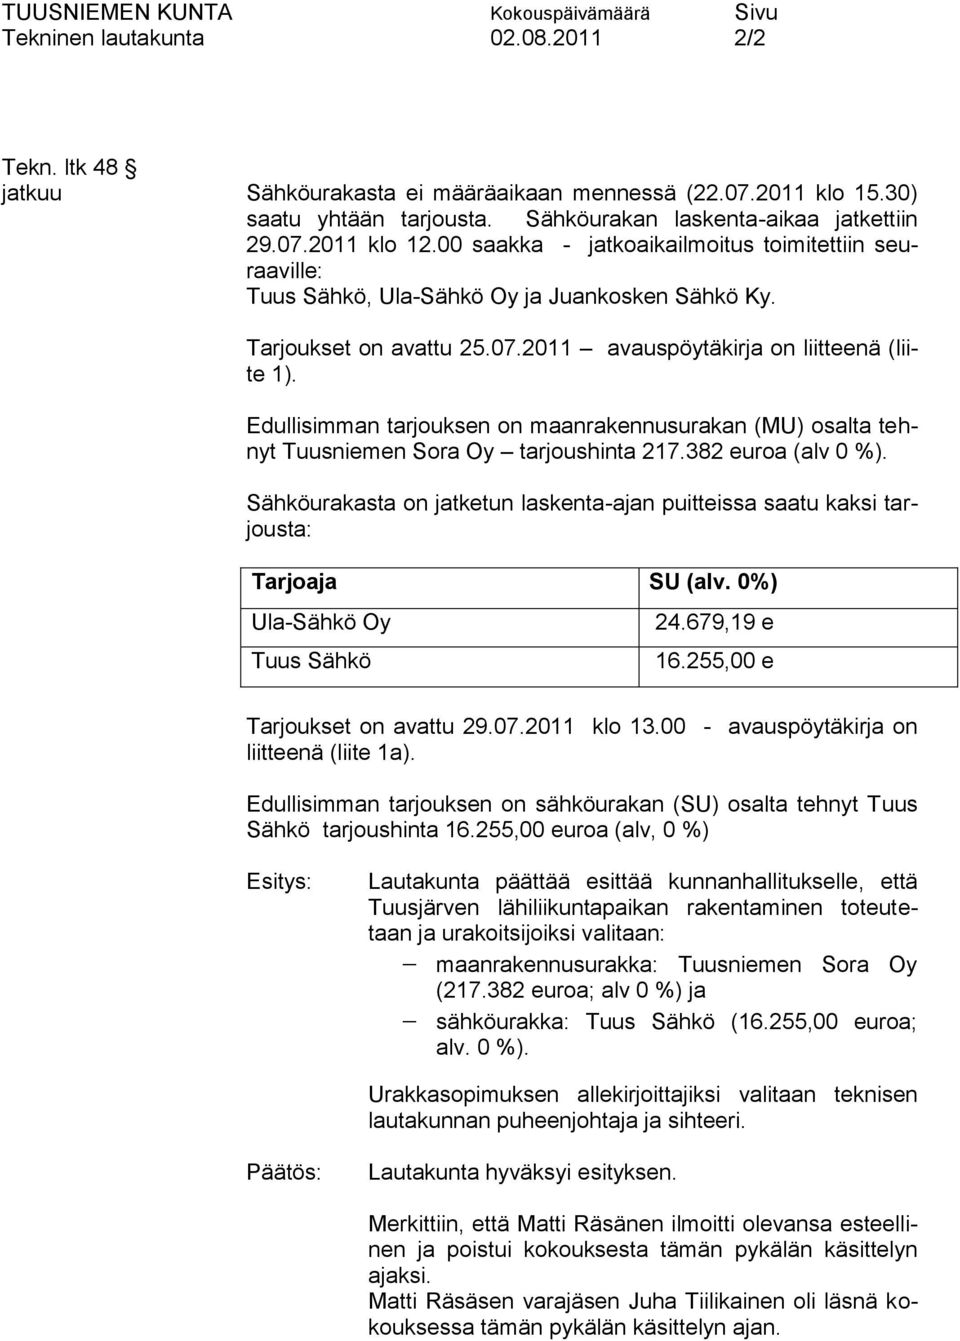 Edullisimman tarjouksen on maanrakennusurakan (MU) osalta tehnyt Tuusniemen Sora Oy tarjoushinta 217.382 euroa (alv 0 %).